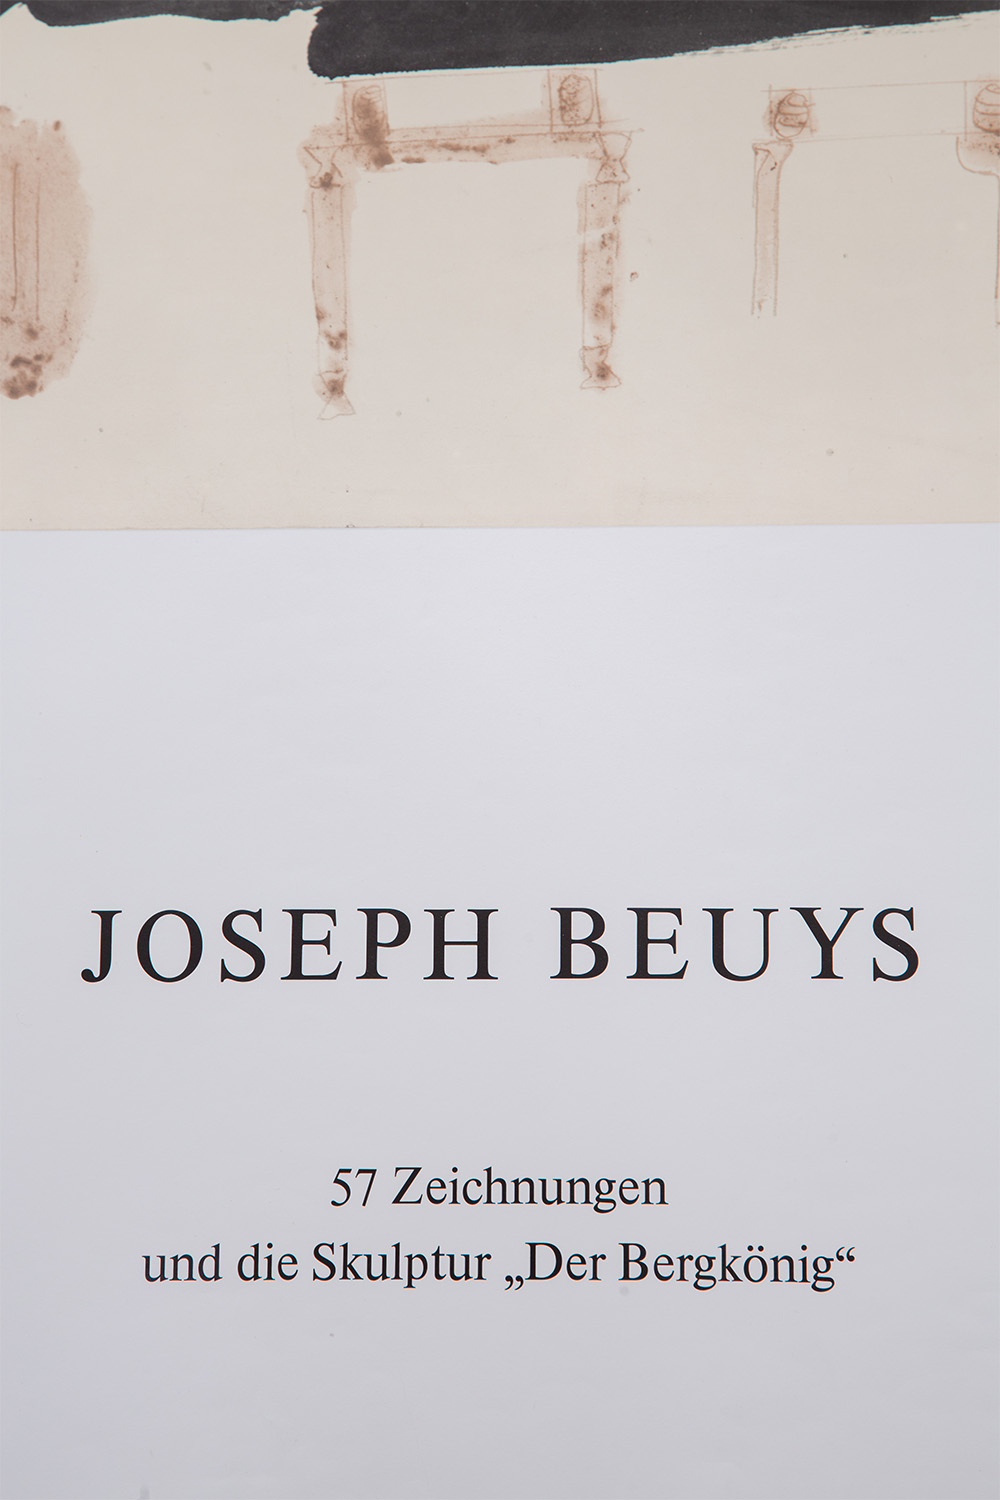 ‘57 Zeichnungen und die Skulptur Der Berkönig’ by Joseph Beuys for Schaumainkai 63 Municipal Gallery , 1983